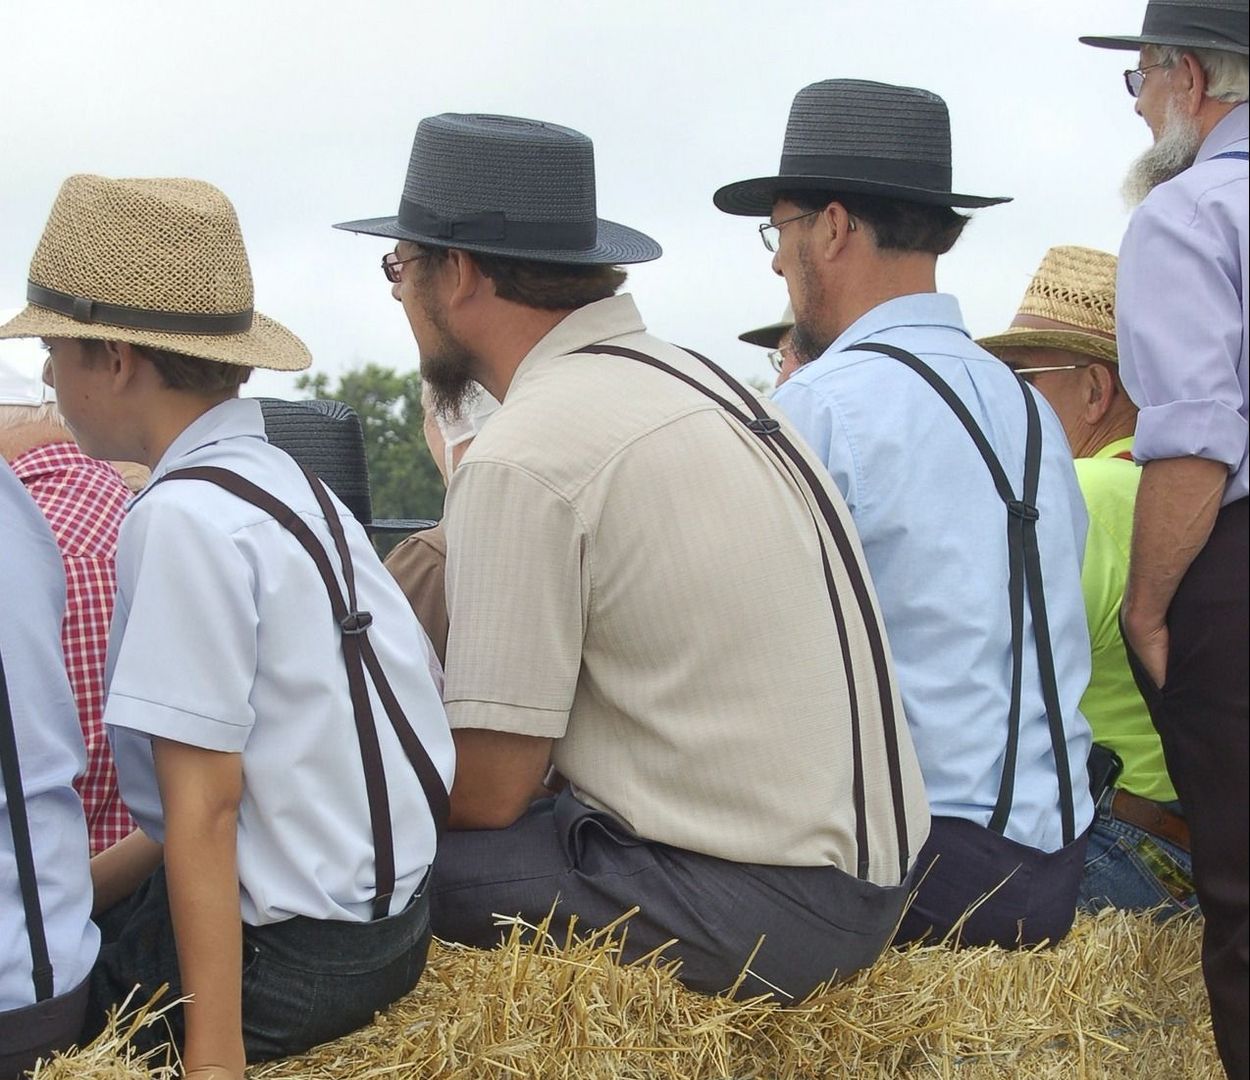 Amish Dress For Men.